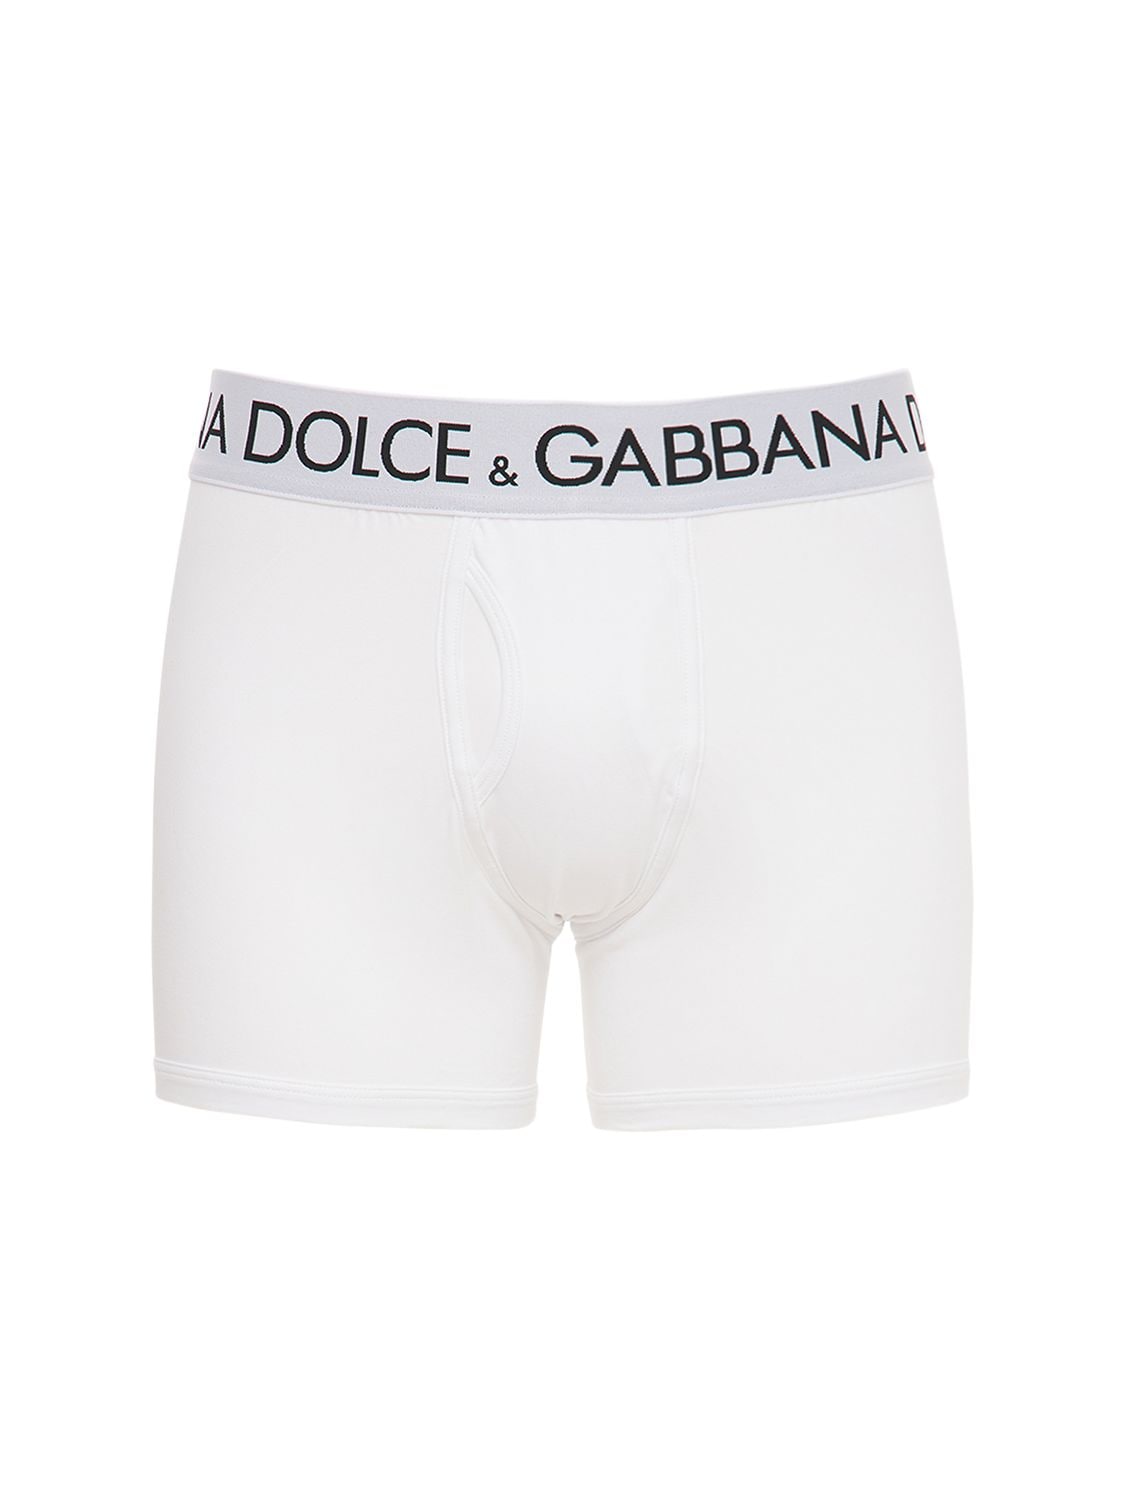 DOLCE & GABBANA LOGO棉质平角内裤,74I3IS003-VZA4MDA1